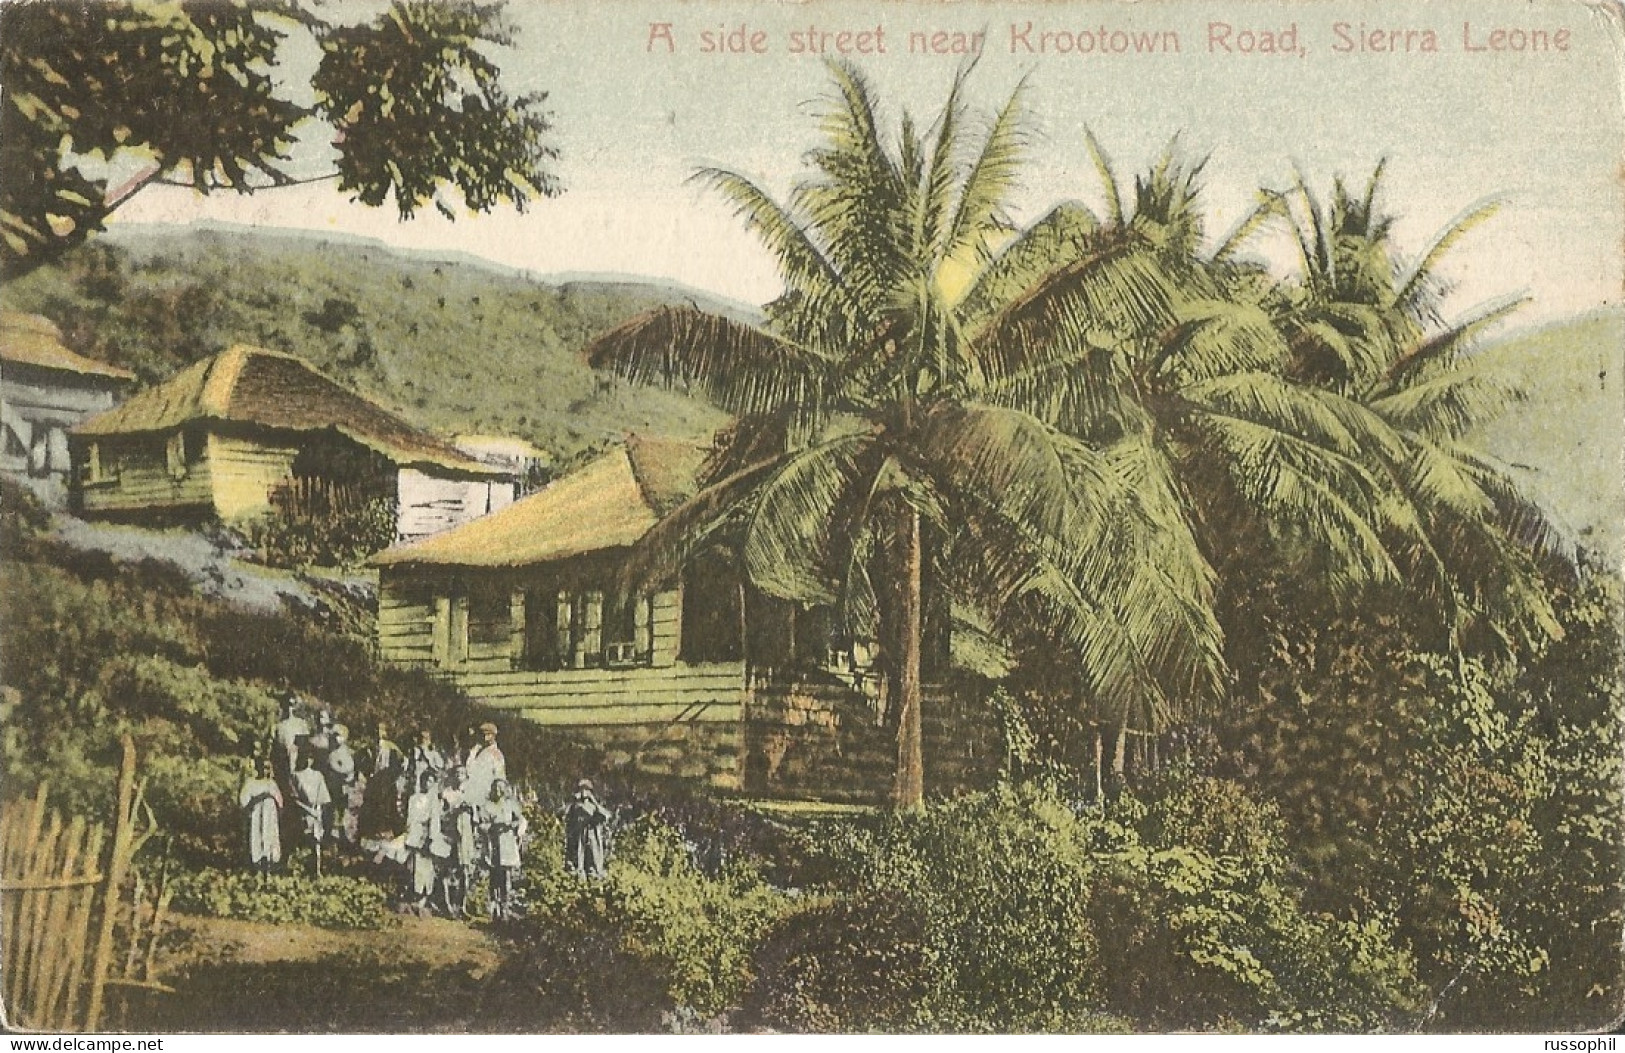 SIERRA LEONE - A SIDE STREET NEAR KROOTOWN ROAD - 1905 - Sierra Leona